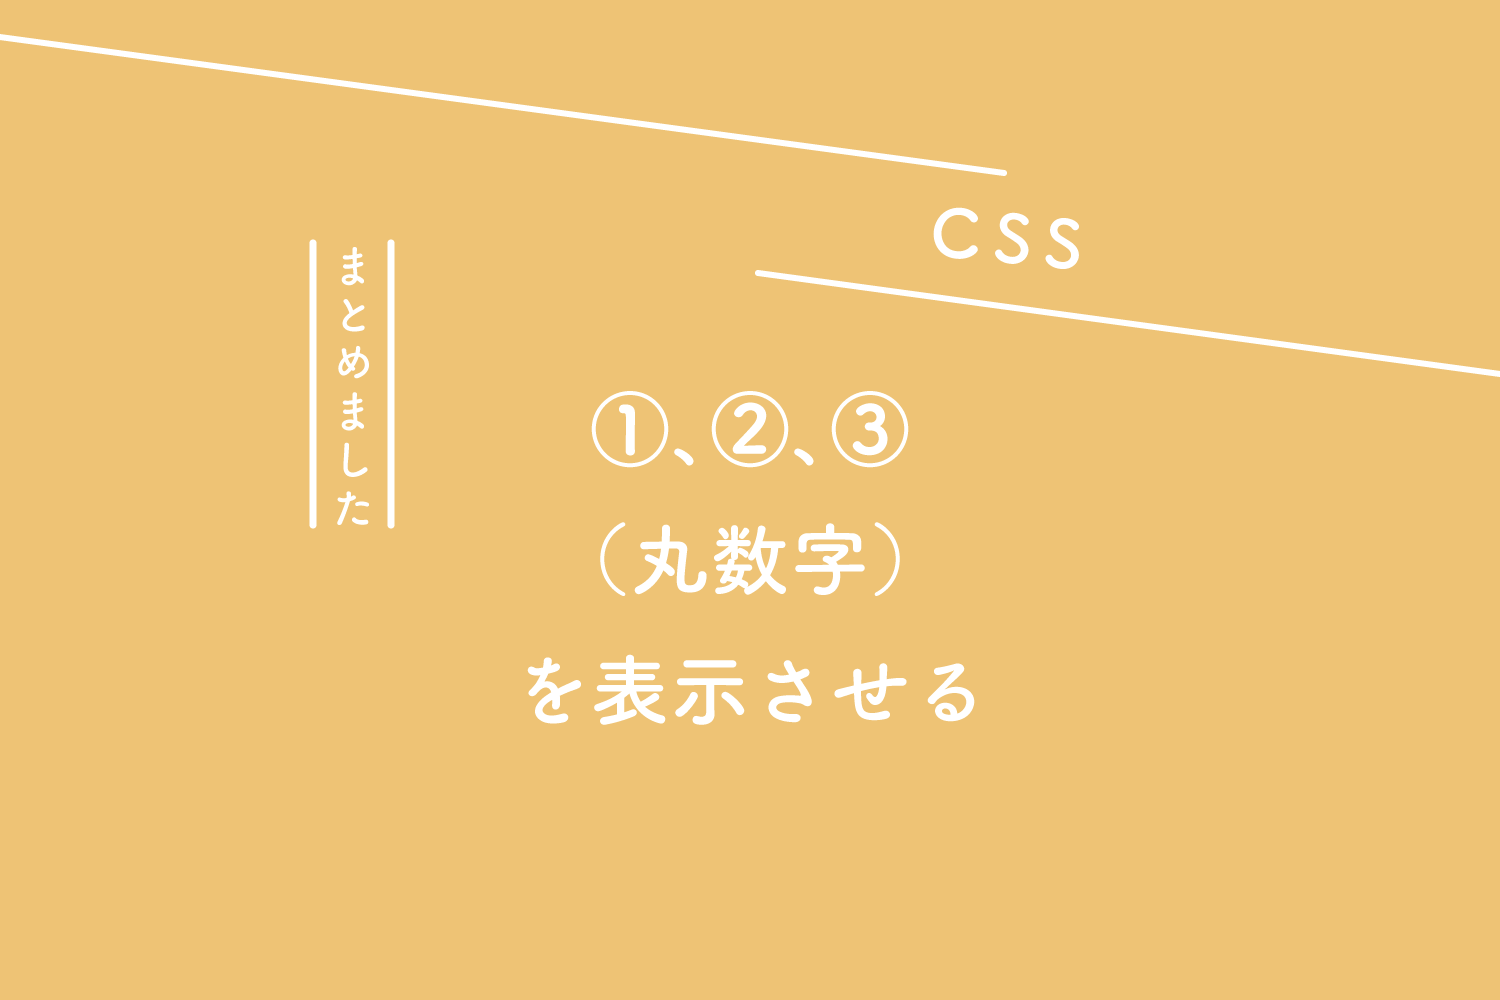 【CSS】olのリストで①、②、③（丸数字）を表示させる